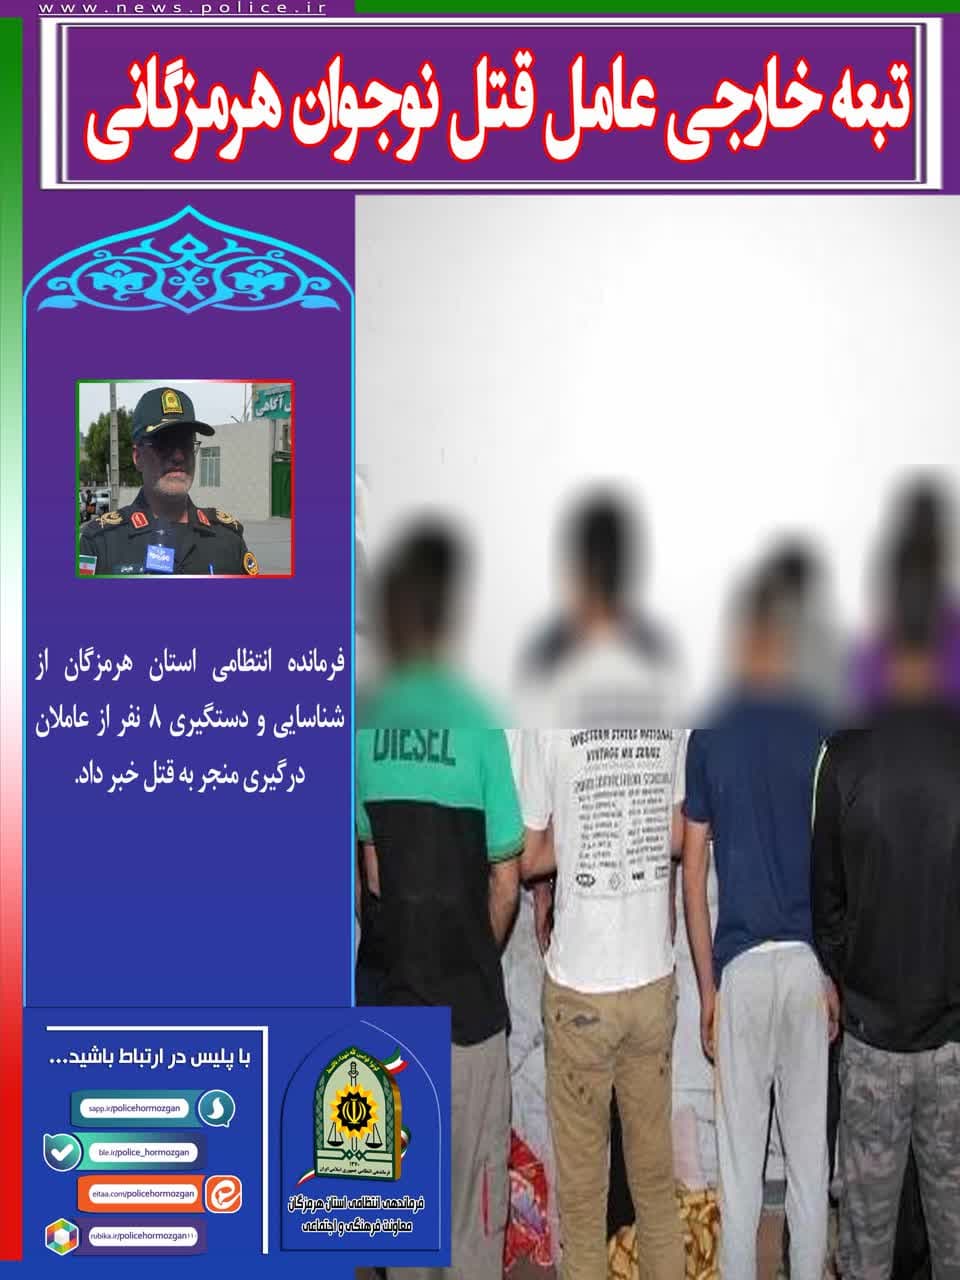 فرمانده انتظامی استان هرمزگان از شناسایی و دستگیری 8 نفر از عاملان درگیری منجر به قتل خبر داد